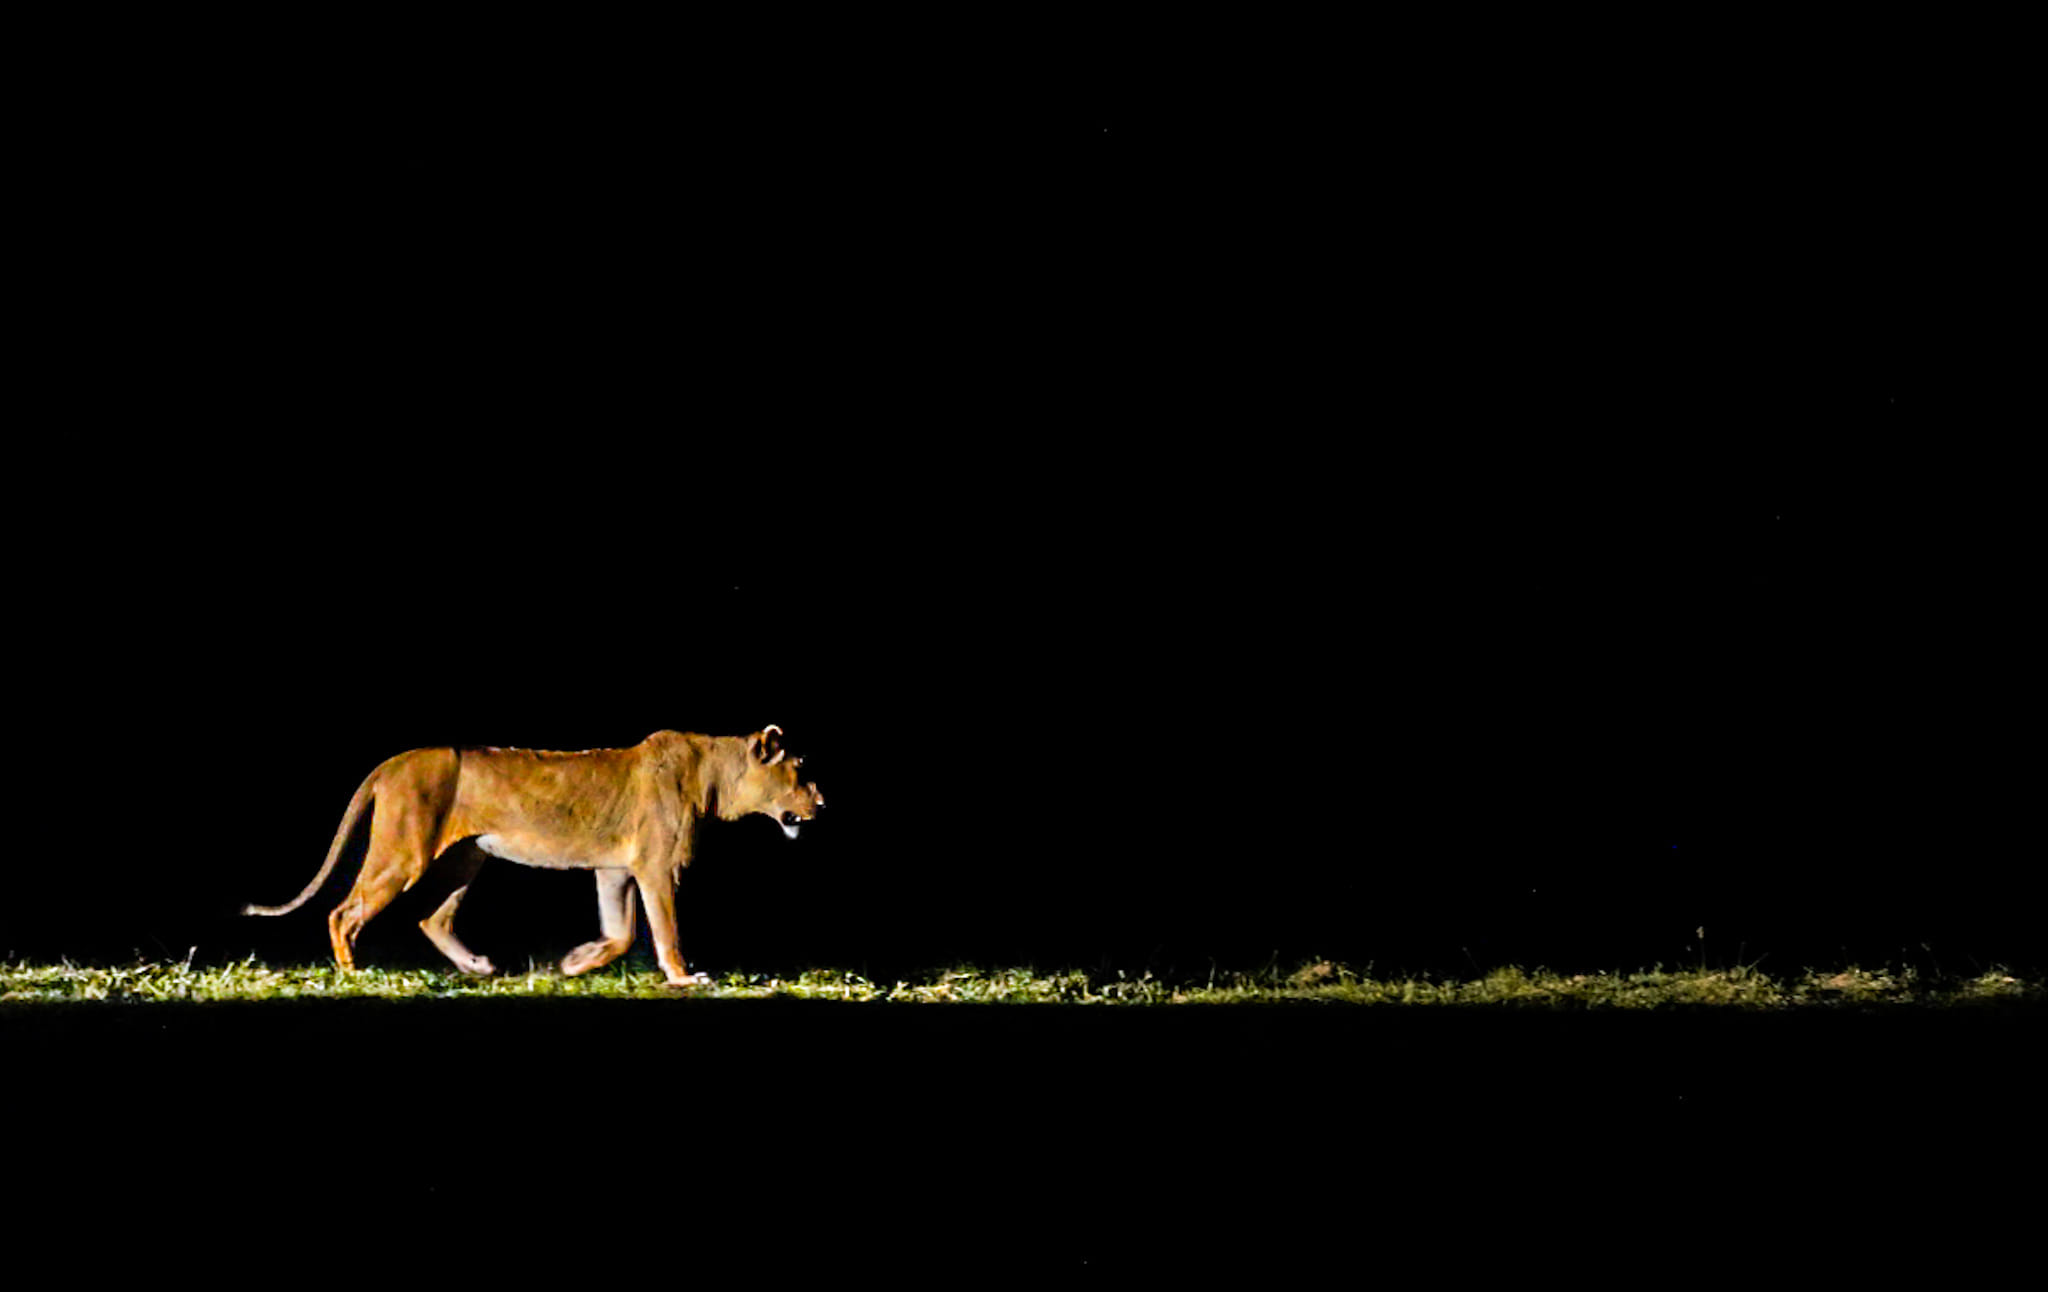 Live-Bericht aus dem Luangwa Nationalpark. Fünf Löwen sind gerade auf der Jagd und wir beobachten das Anpirschen.